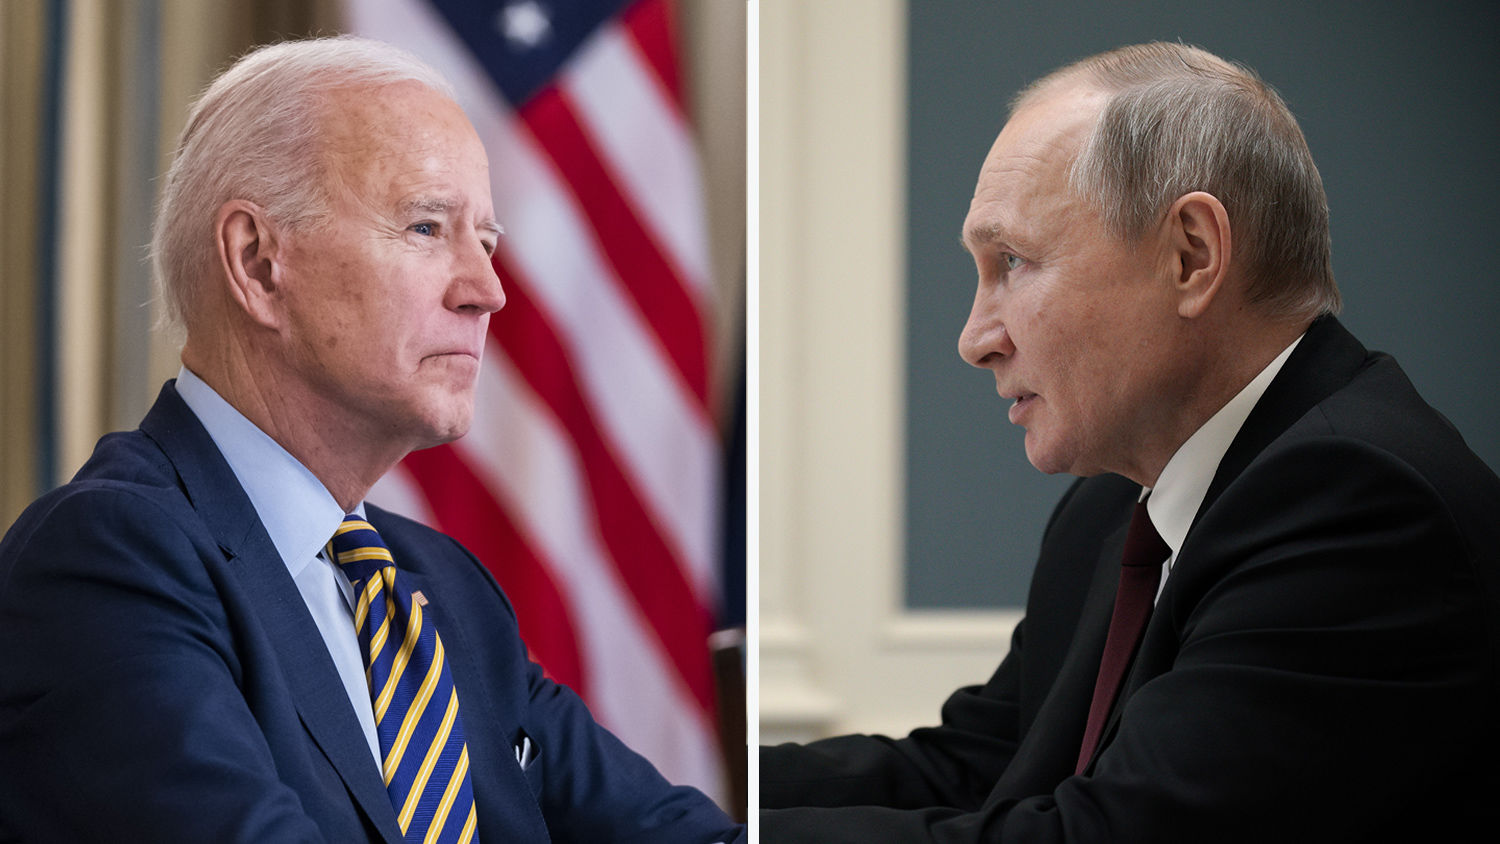 Байден и Путин дали согласие на саммит по безопасности и встречу, но есть условие